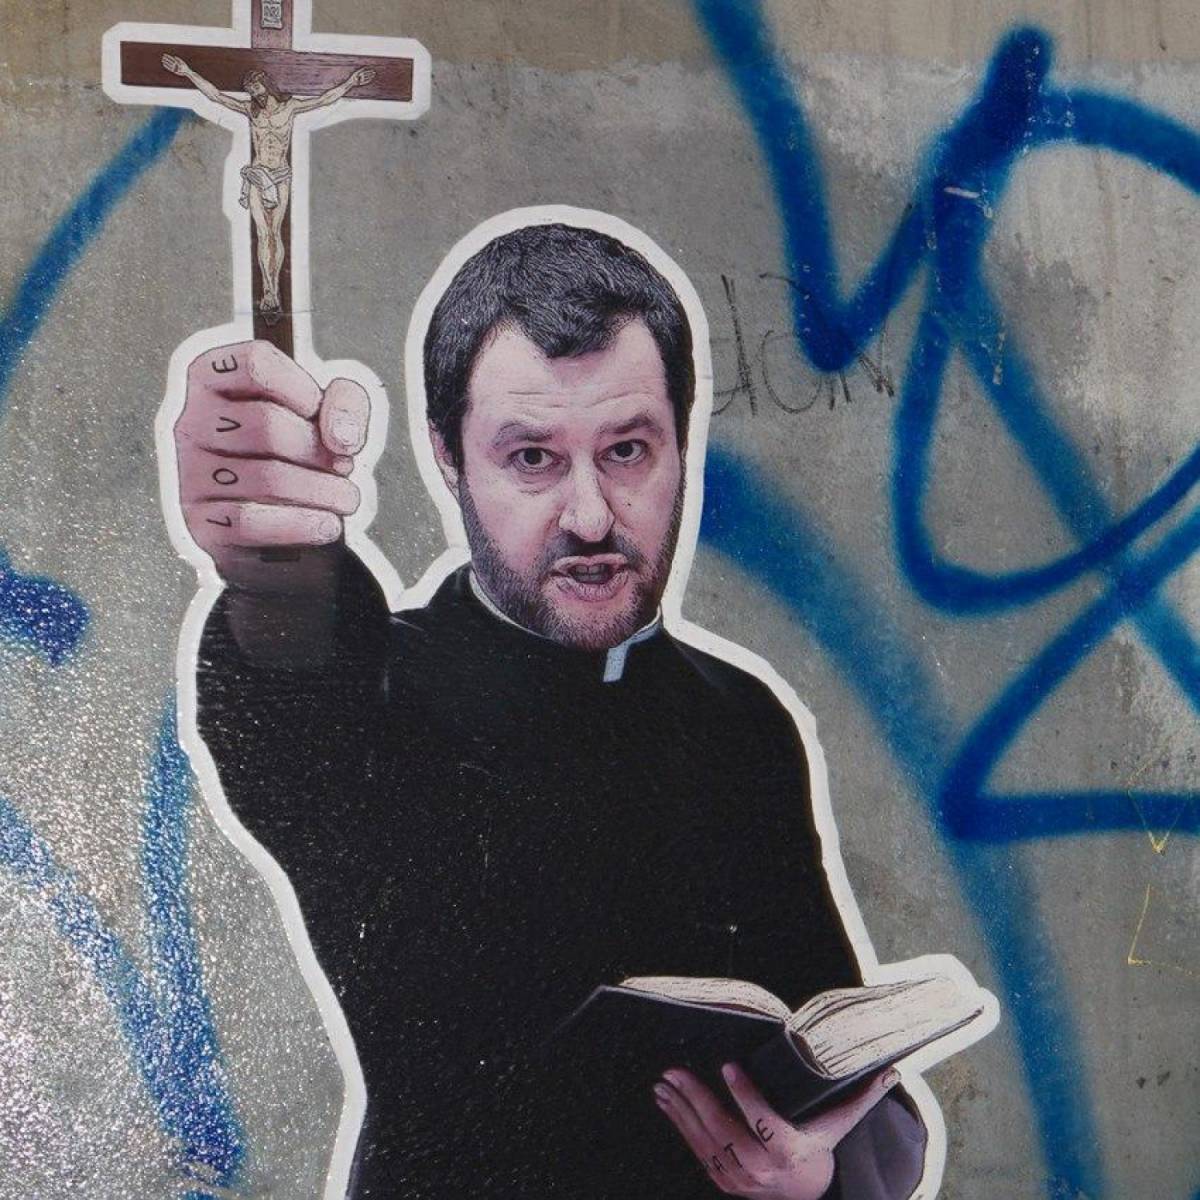 Quelle critiche a Salvini e le preoccupazioni dei vescovi di creare divisioni tra i cattolici